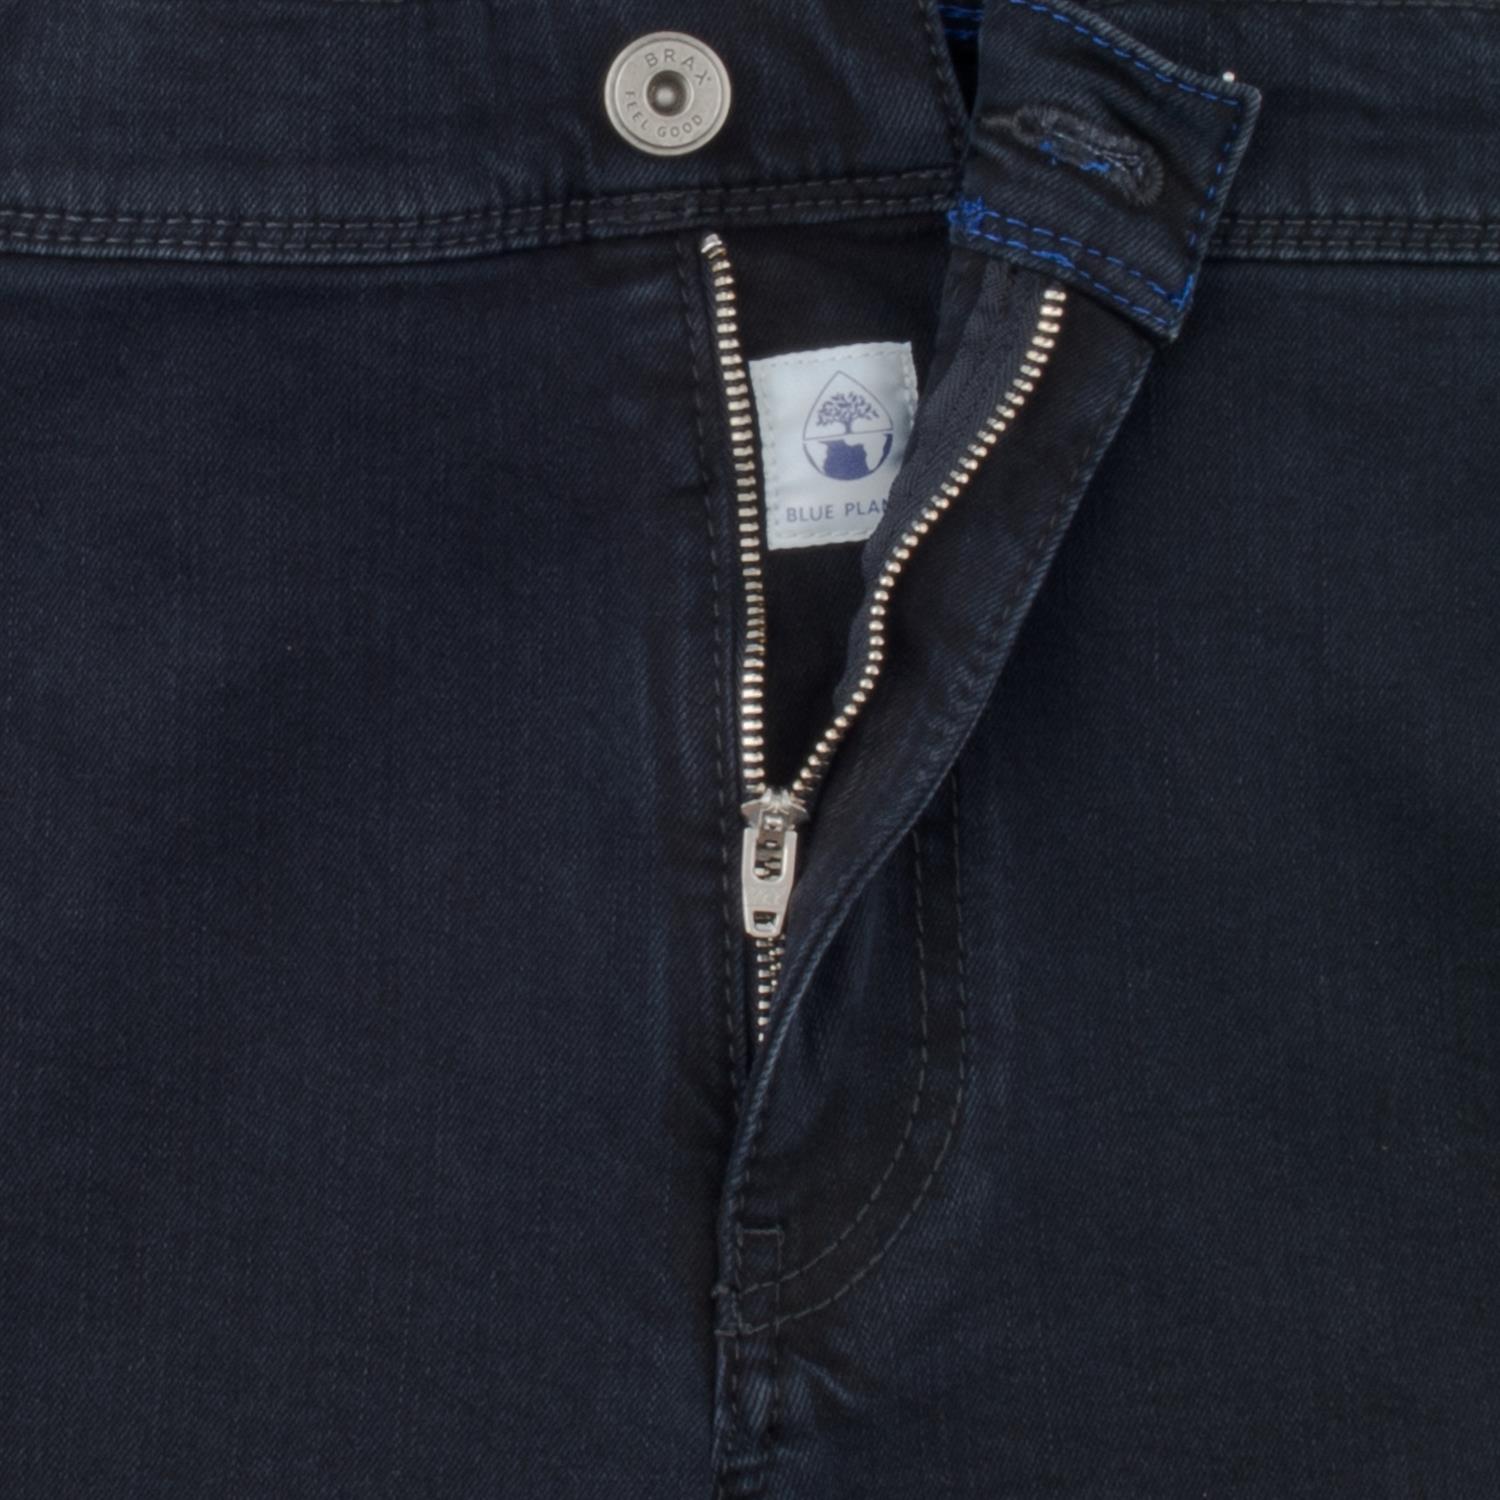 BRAX Jeans dunkelblau Herrenmode kaufen in Übergrößen